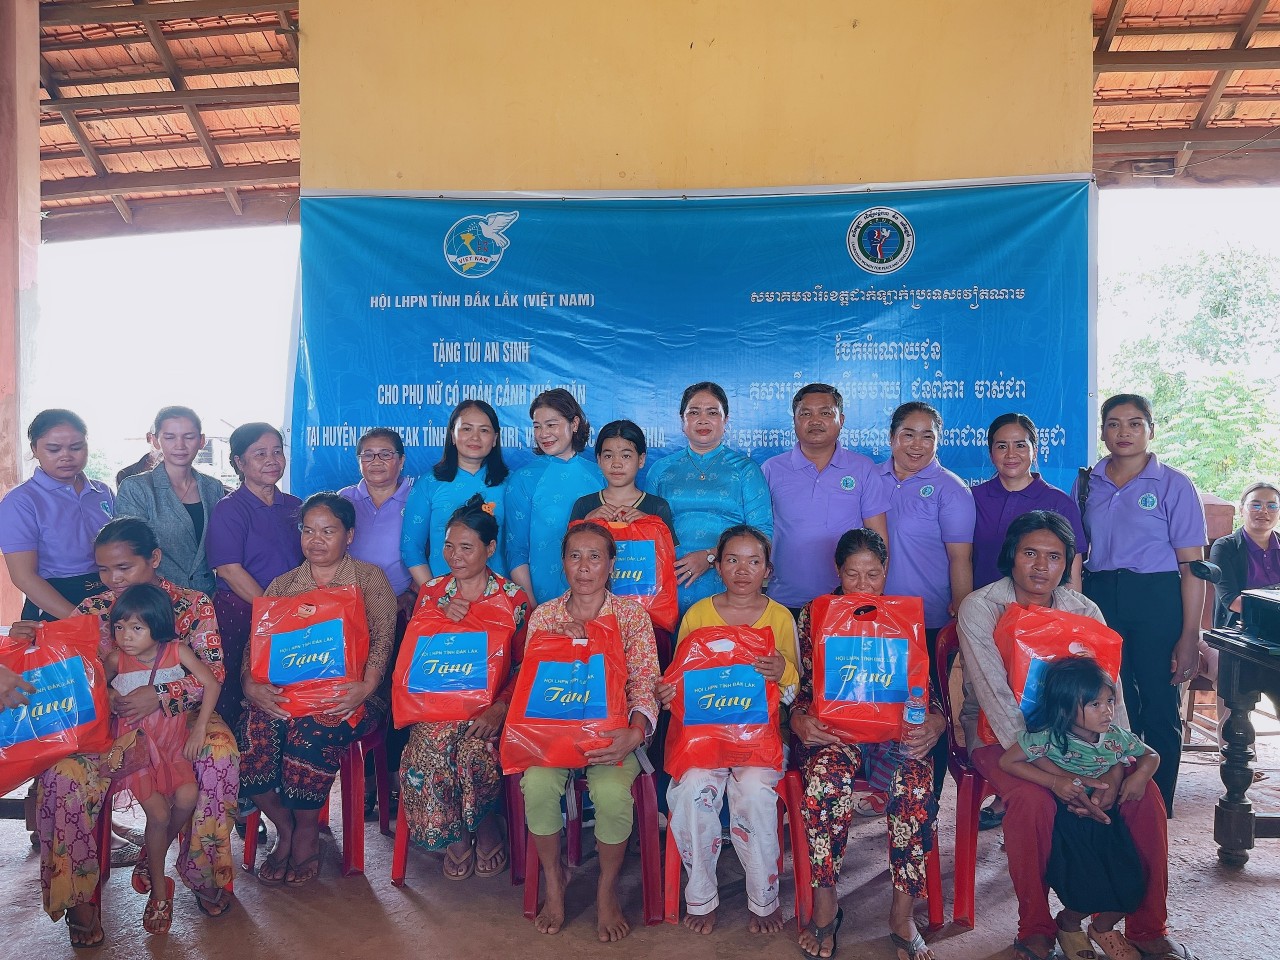 Hội LHPN Đắk Lắk và Sở Công tác Phụ nữ tỉnh Modulkiri (CamPuchia) ký kết “Thỏa thuận hợp tác vì hòa bình và phát triển” giai đoạn 2022 - 2027